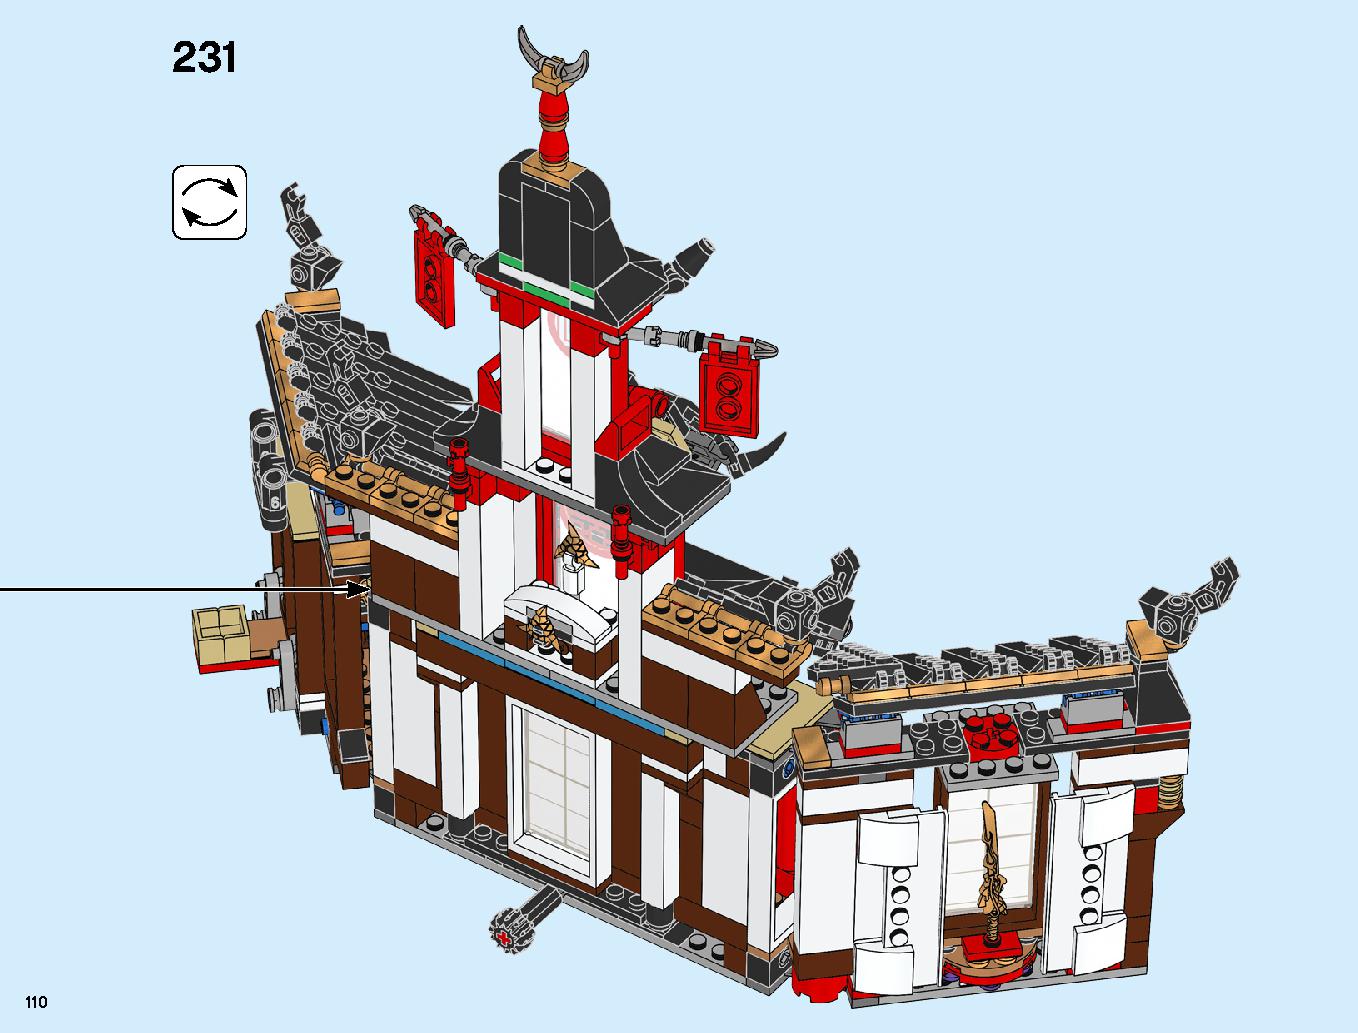 ニンジャ道場 70670 レゴの商品情報 レゴの説明書・組立方法 110 page